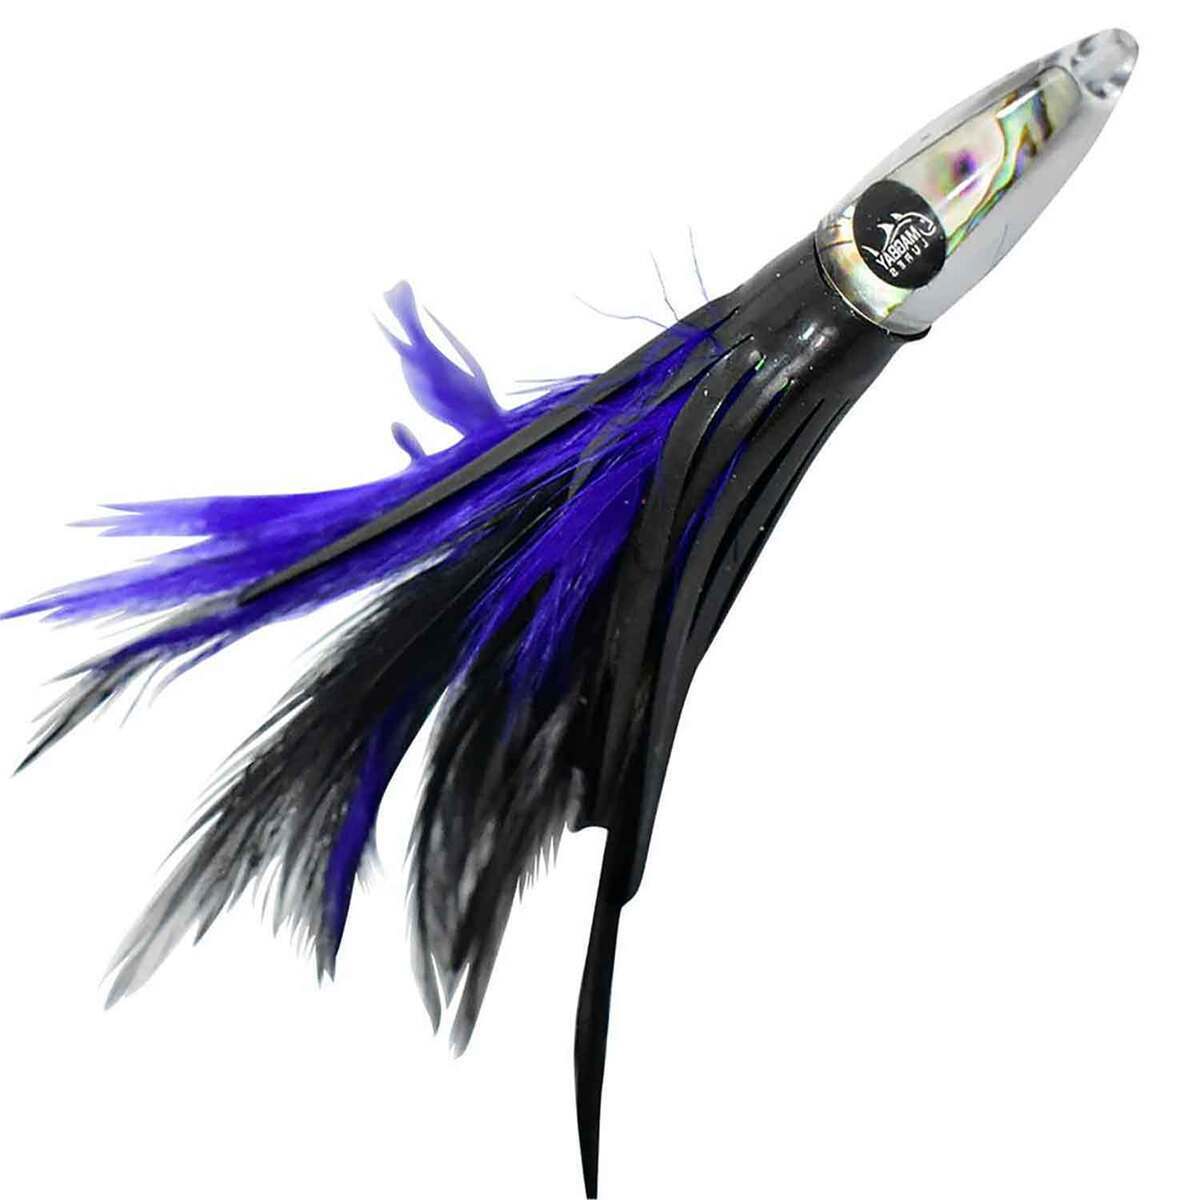 https://www.sportsmans.com/medias/magbay-lures-ultimate-tuna-feathers-saltwater-trolling-lure-purpleblack-6in-1780390-1.jpg?context=bWFzdGVyfGltYWdlc3w1OTY0OXxpbWFnZS9qcGVnfGFEbGtMMmd4TlM4eE1UTTVOVFkxTkRZeE5UQTNNQzh4TWpBd0xXTnZiblpsY25OcGIyNUdiM0p0WVhSZlltRnpaUzFqYjI1MlpYSnphVzl1Um05eWJXRjBYM050ZHkweE56Z3dNemt3TFRFdWFuQm58MjFjMjU0OTg3MzdiMTA0OTI0NmQyNWI1NjY2YWNiYzc2YWE2Yjk1YzJkMDAxMDY3Njc3OWI2Zjk5MDZkZTA0Nw